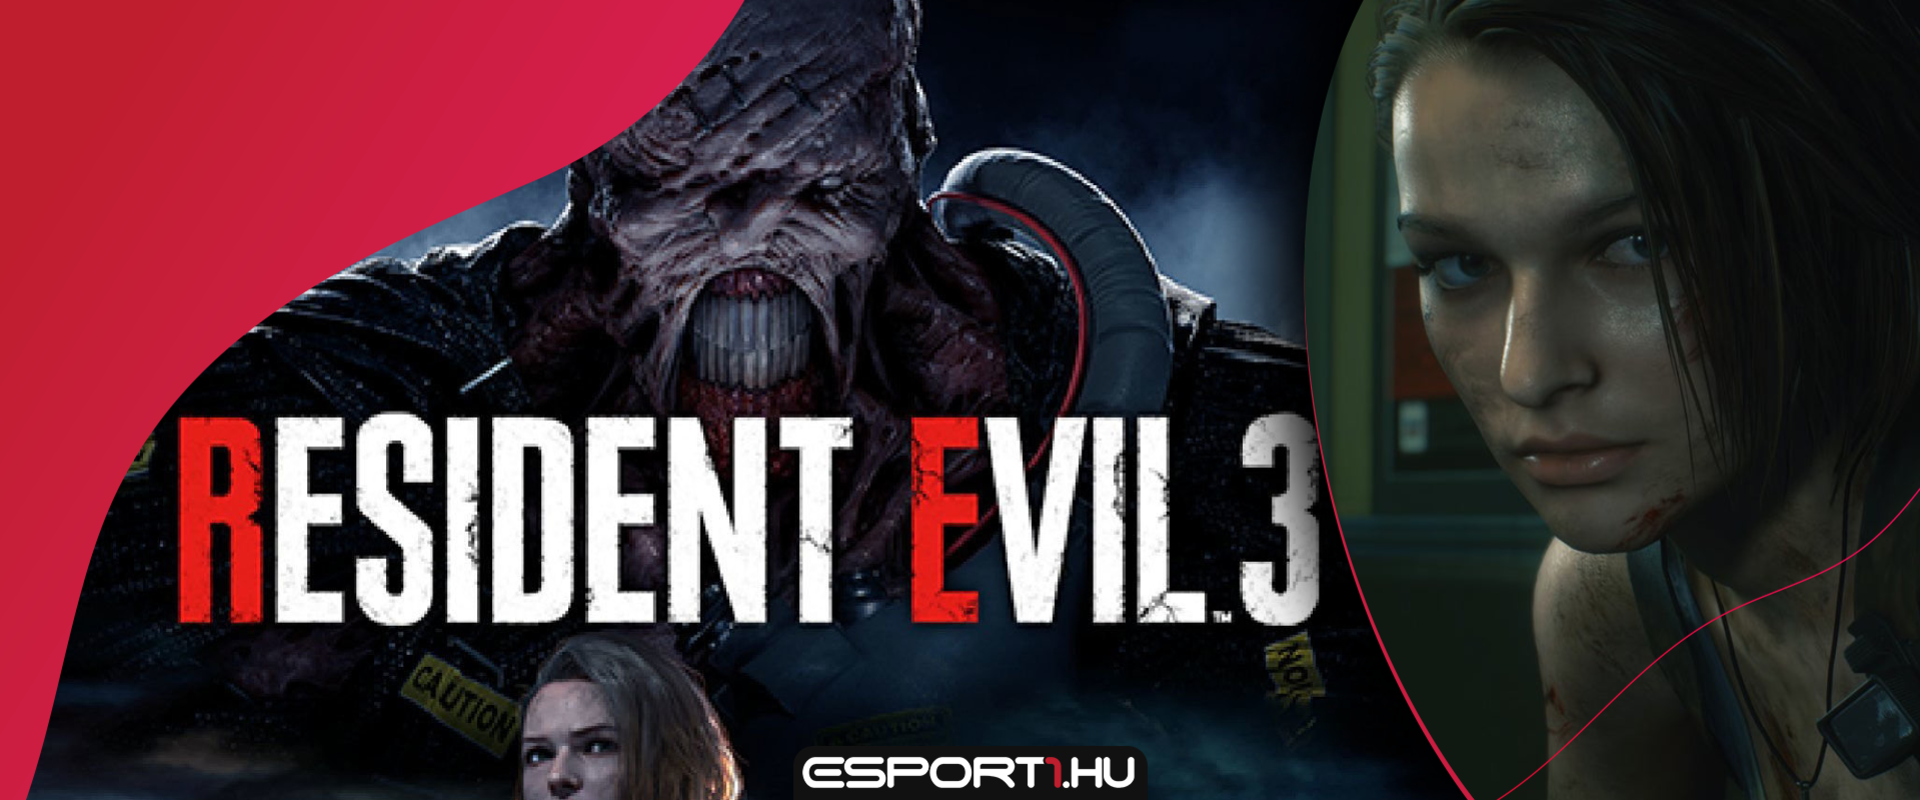 Hivatalosan is bemutatták a Resident Evil 3 remake-t, és lesz benne multiplayer!